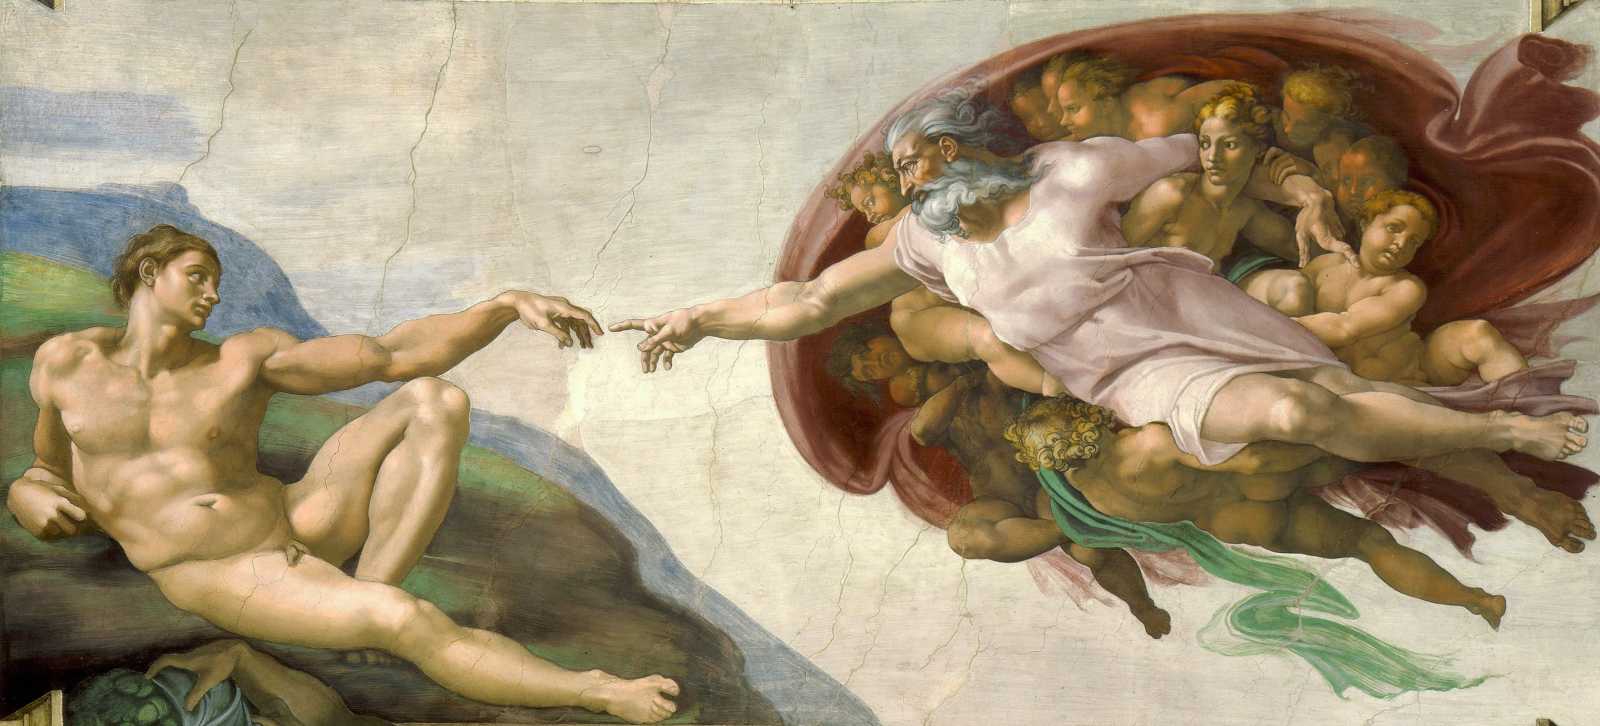 La Creazione di Adamo è un affresco dell'artista italiano Michelangelo, che fa parte del soffitto della Cappella Sistina.